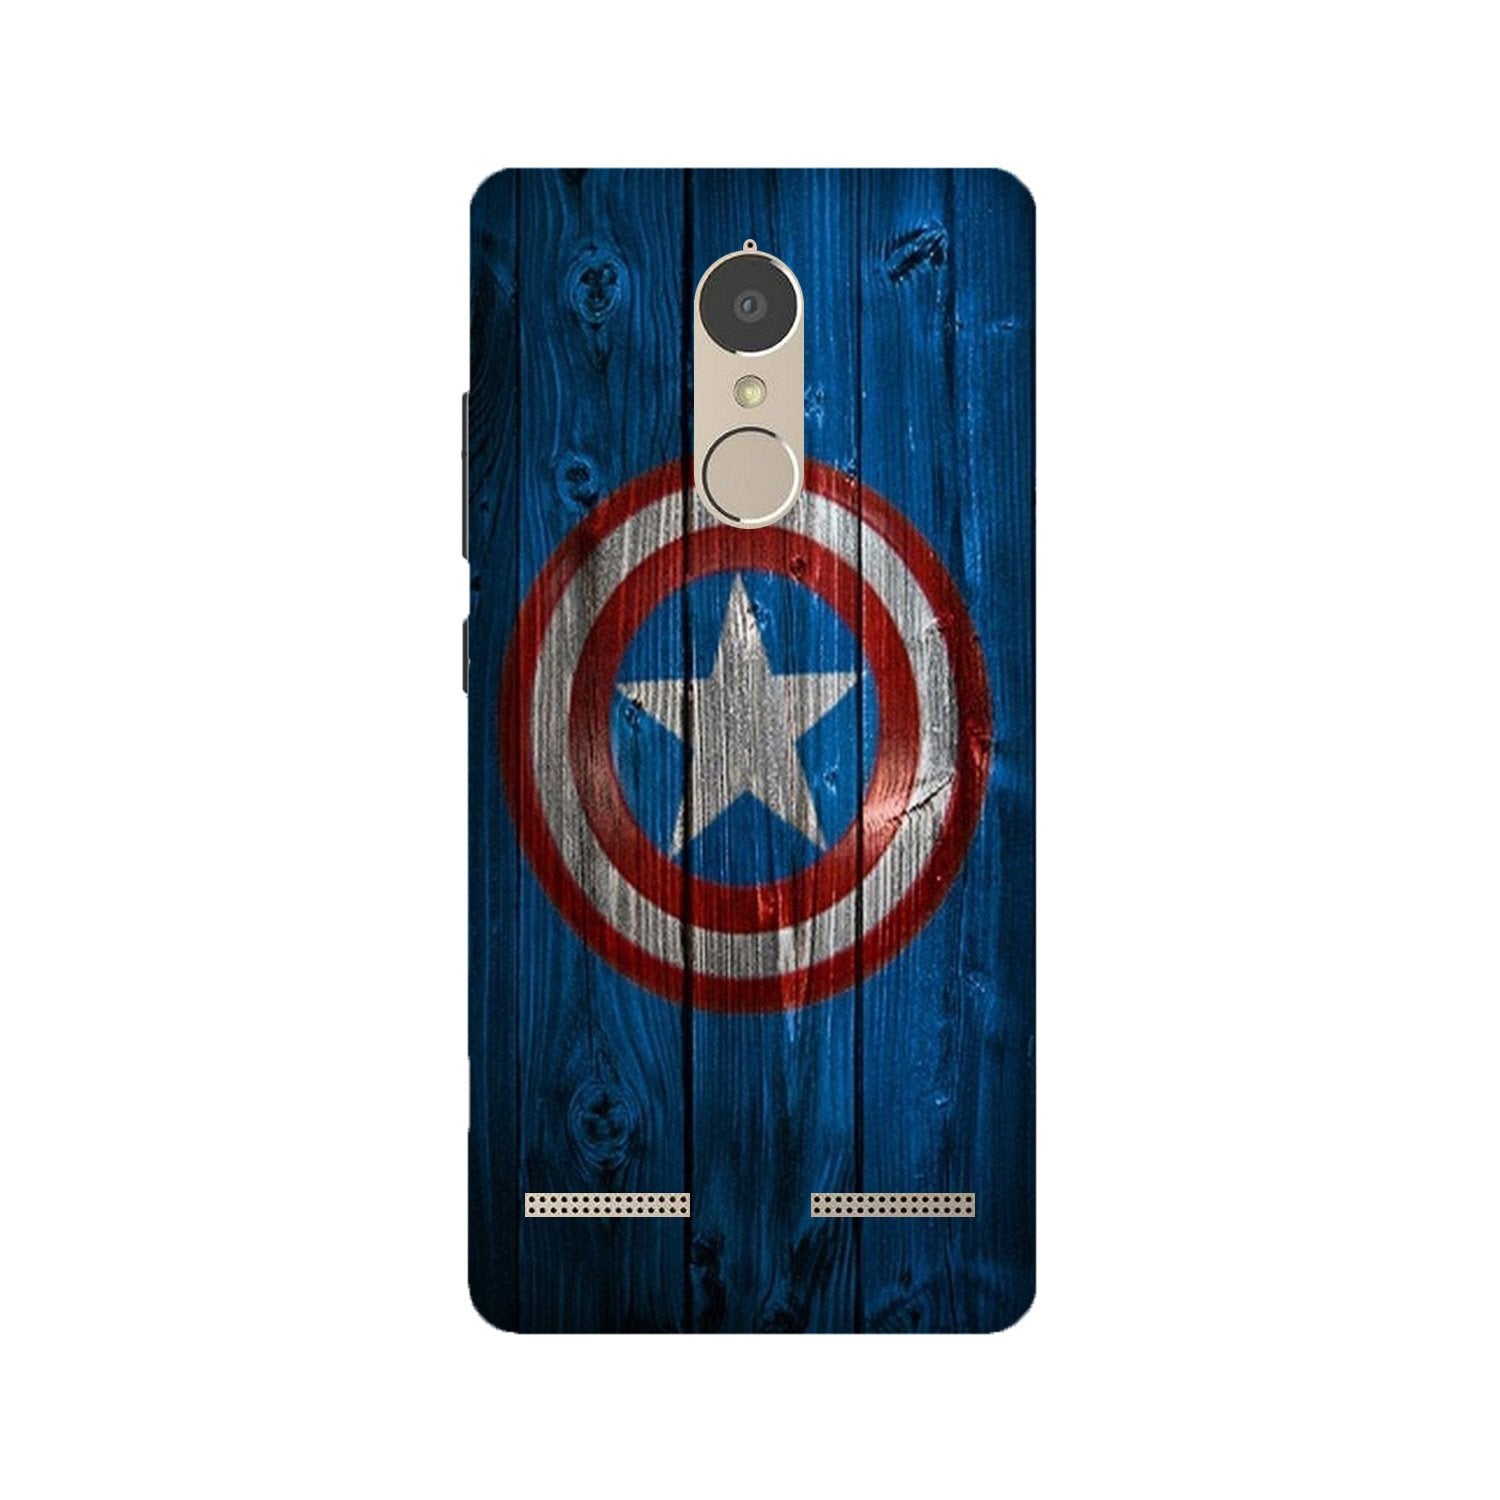 Captain America Superhero Case for Lenovo K6 / K6 Power(Design - 118)